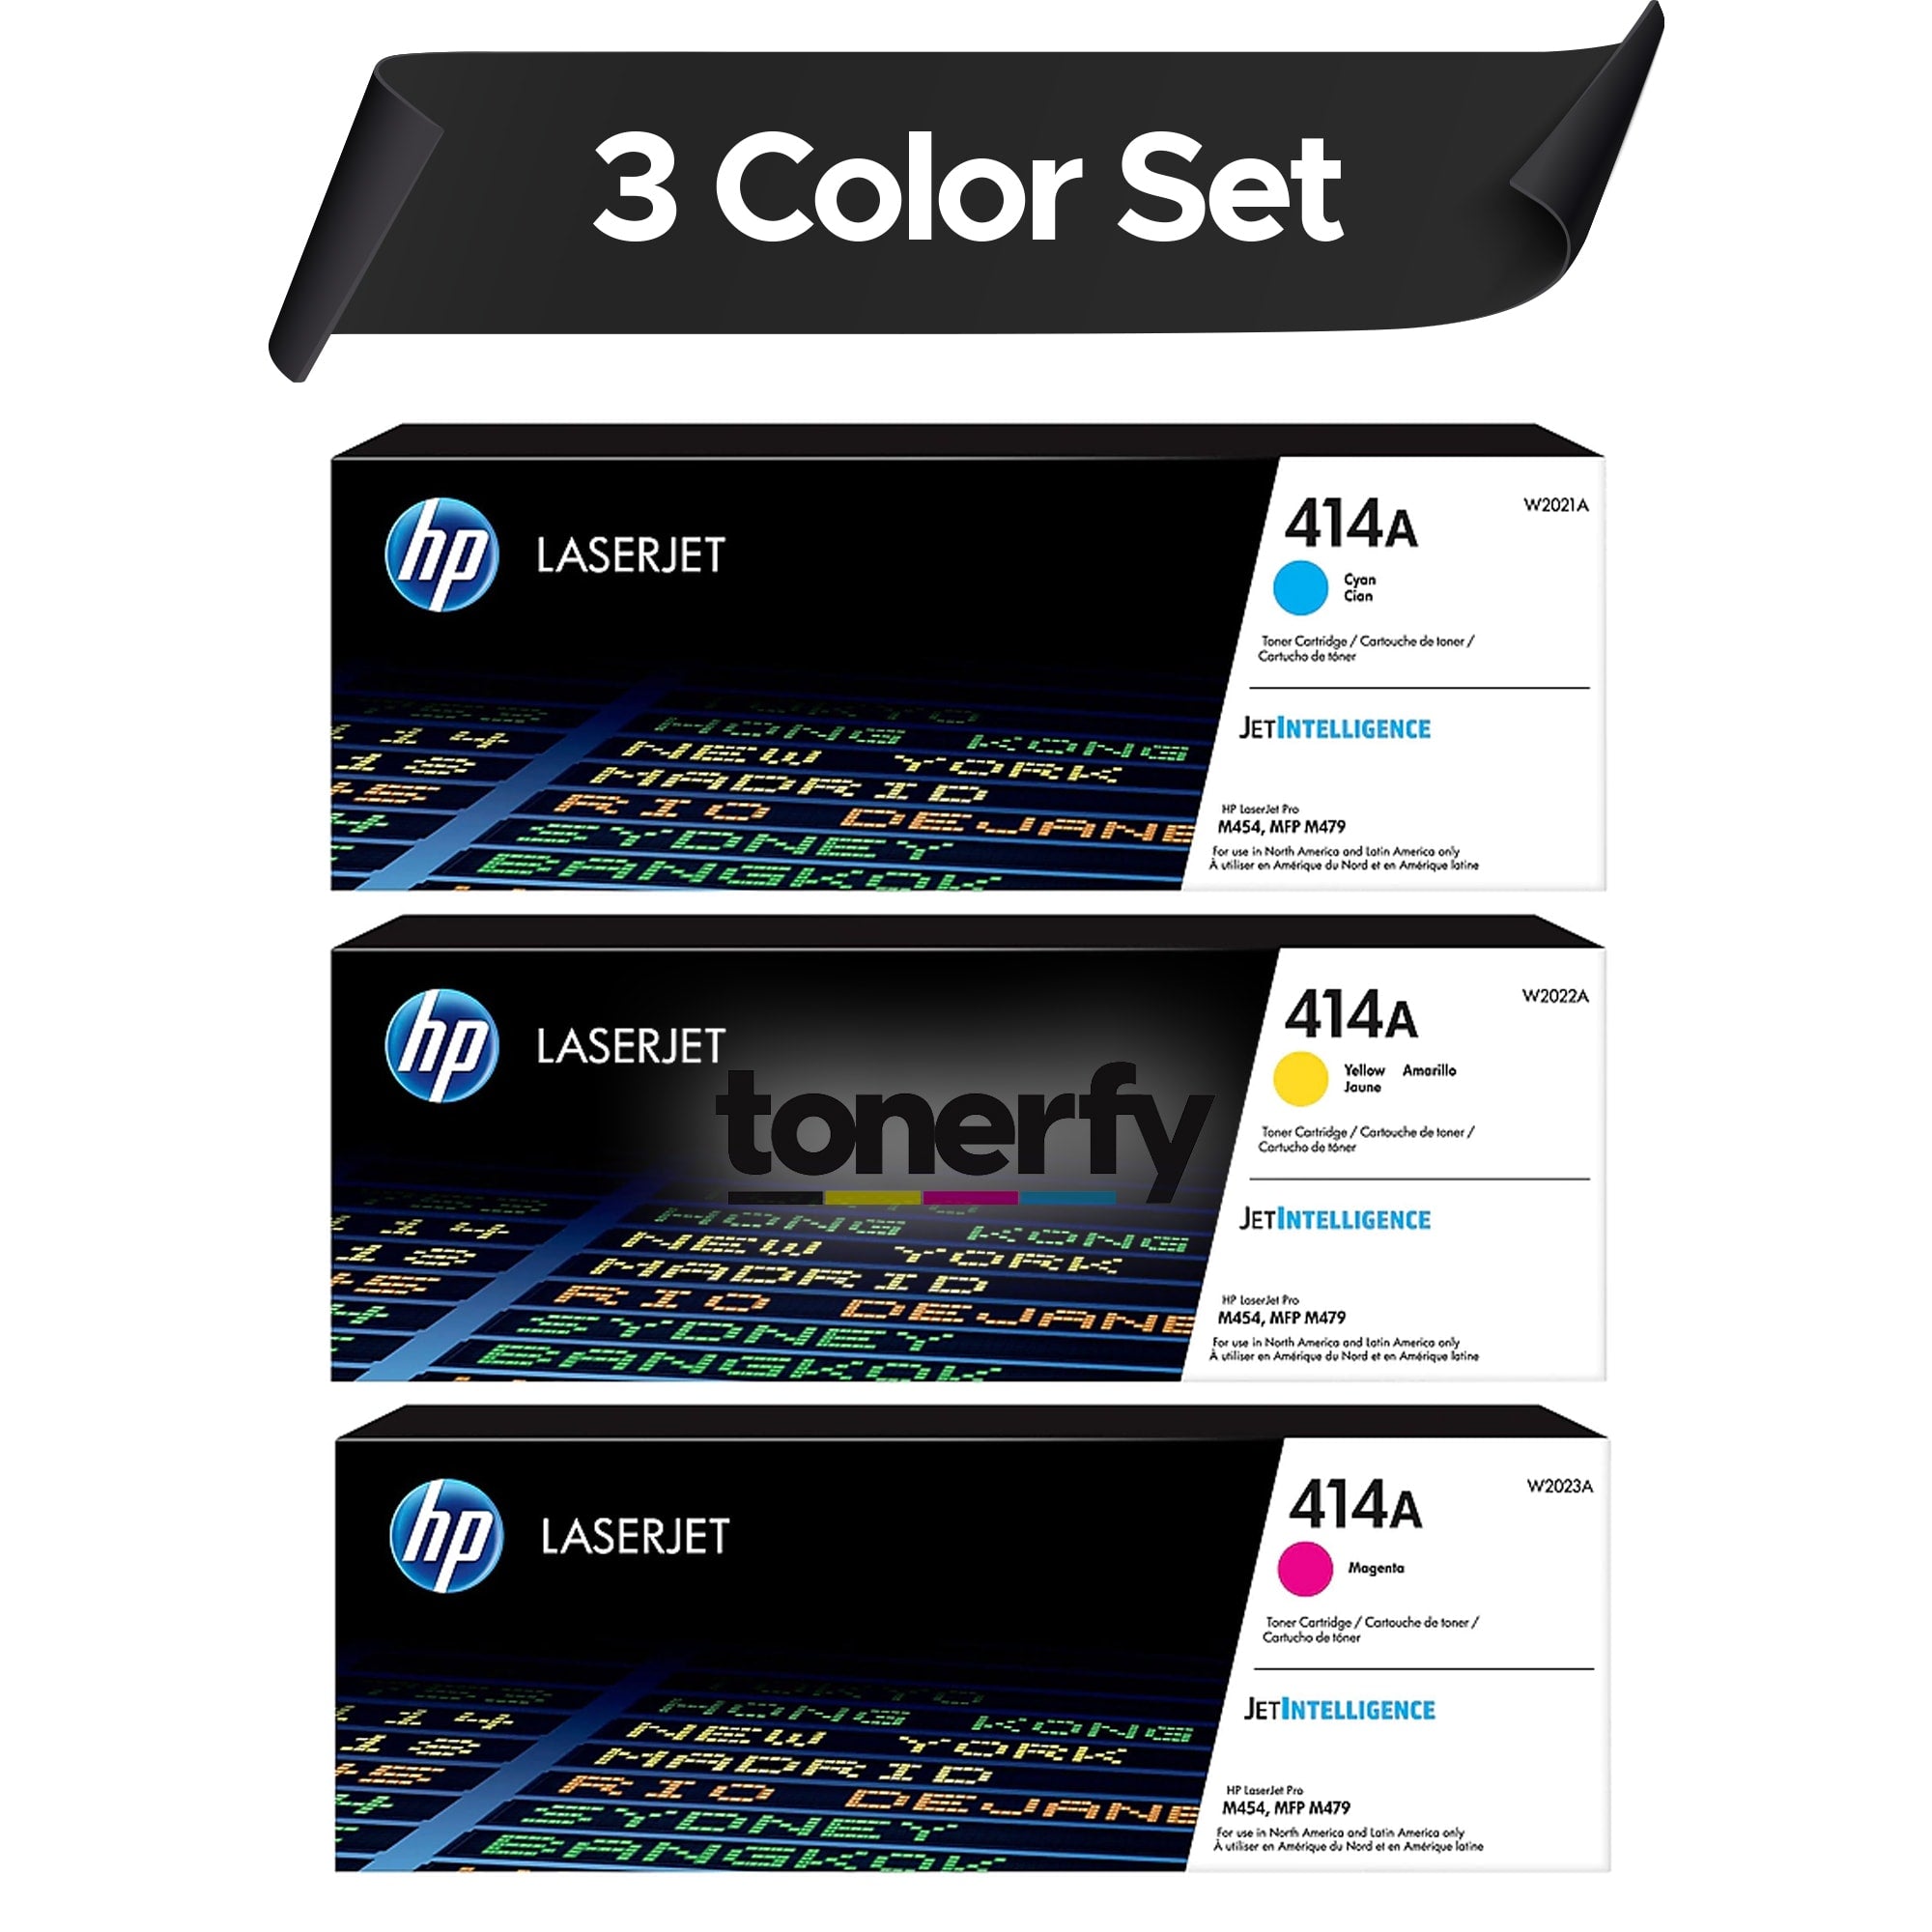 Genuine HP 414A Toner Cartridges Color Set,  3 COLOR SET  W2021A, W2022A, W2023A